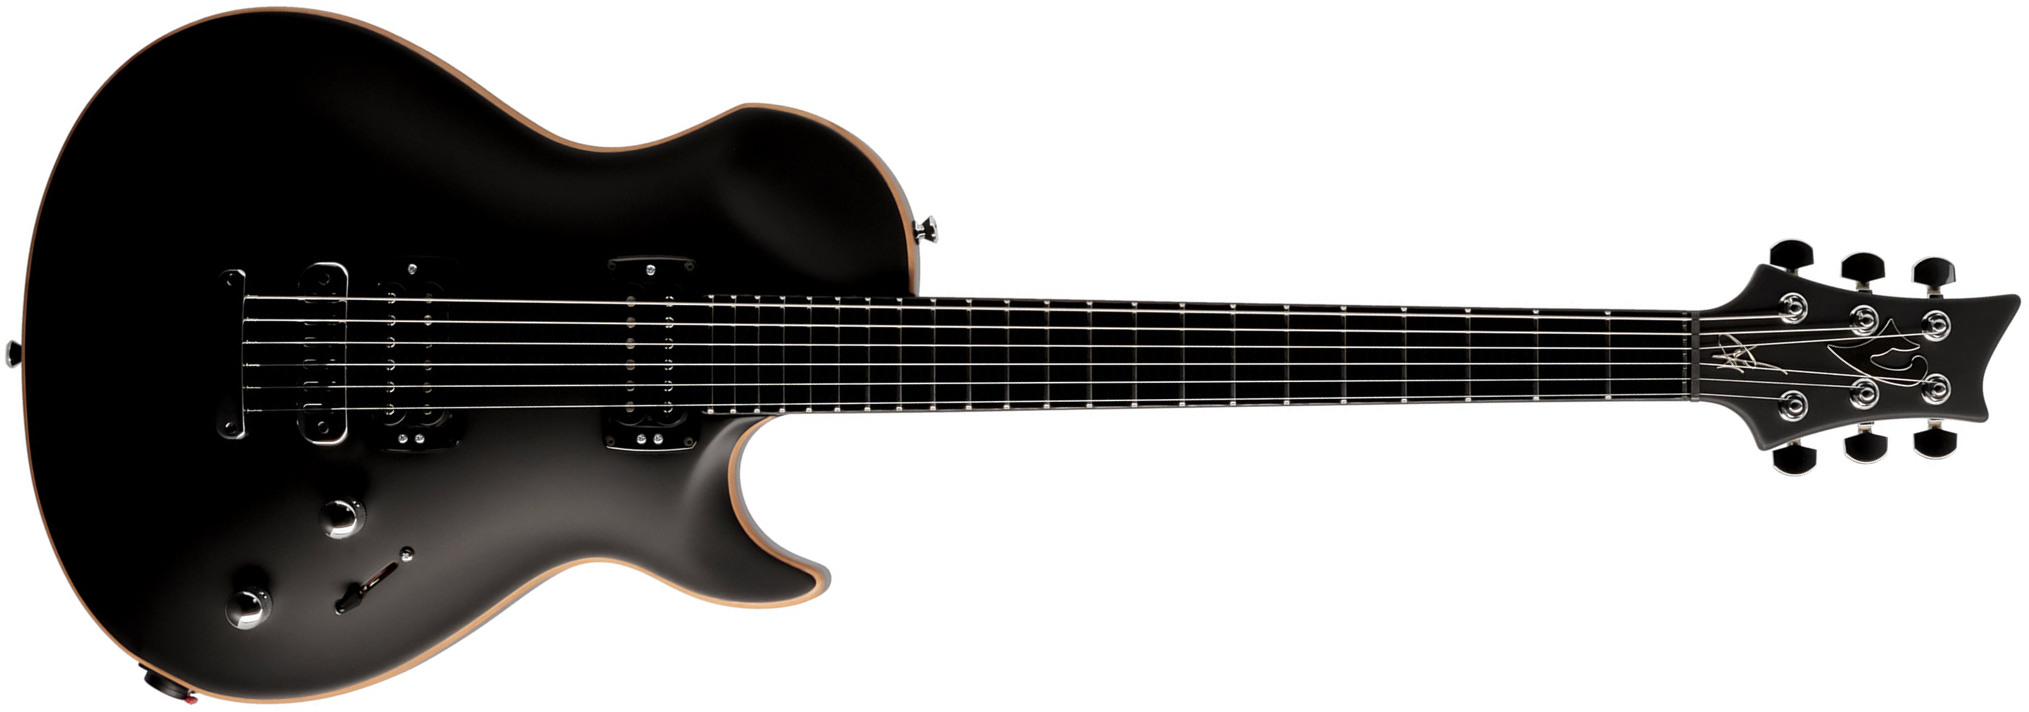 Vigier G.v. Rock 2h Ht Phe - Black Matte - Guitare Électrique Single Cut - Main picture